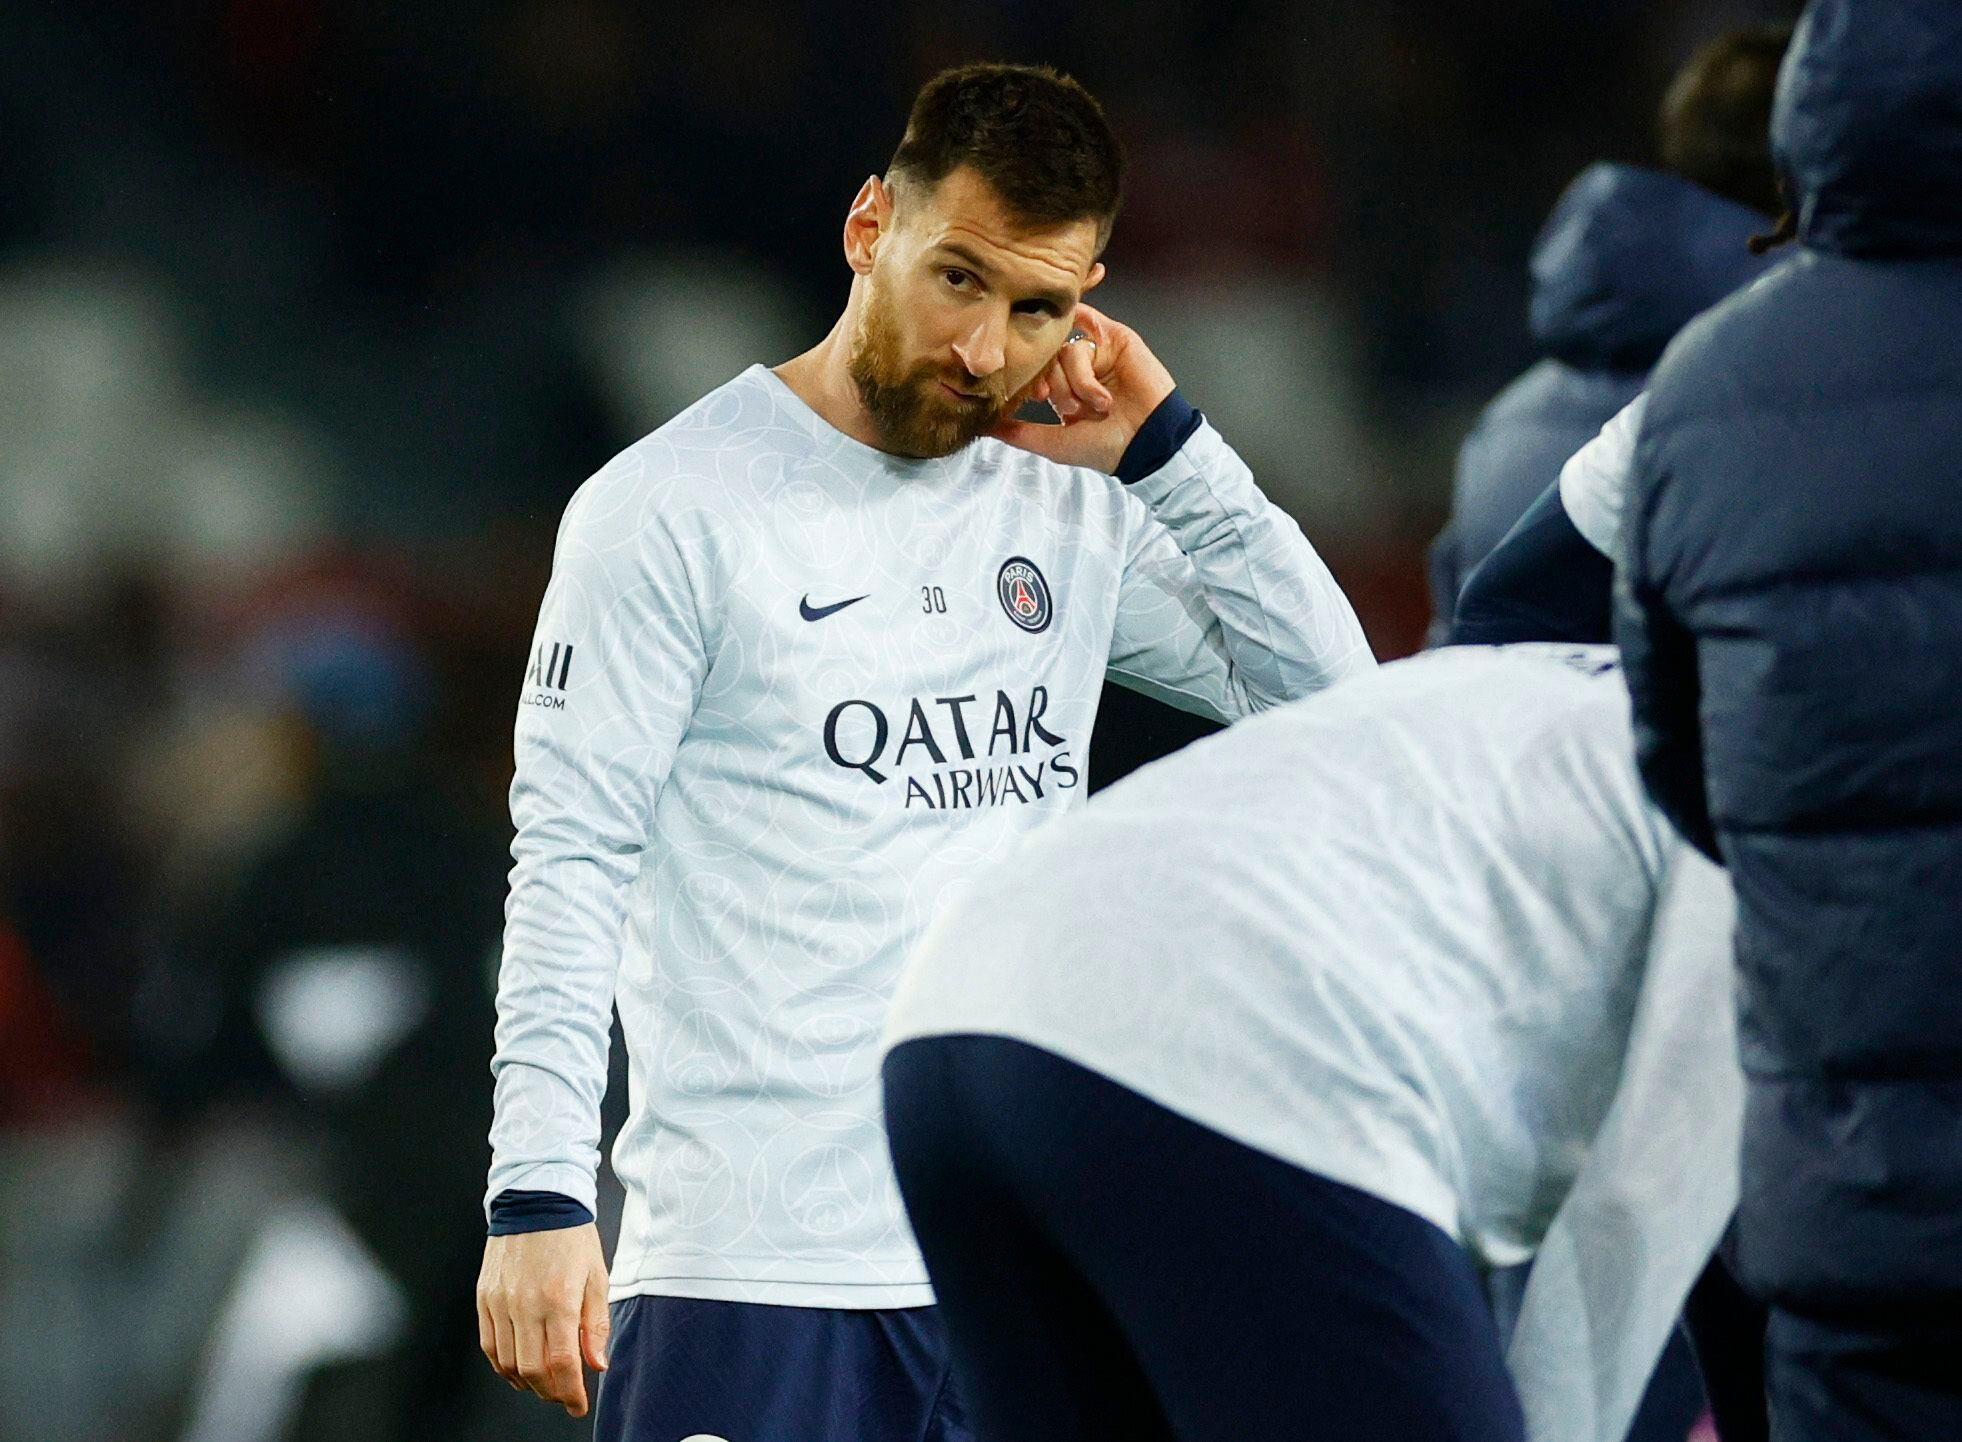 Los simpatizantes del PSG silbaron a Messi en la previa. Foto: REUTERS/Sarah Meyssonnier